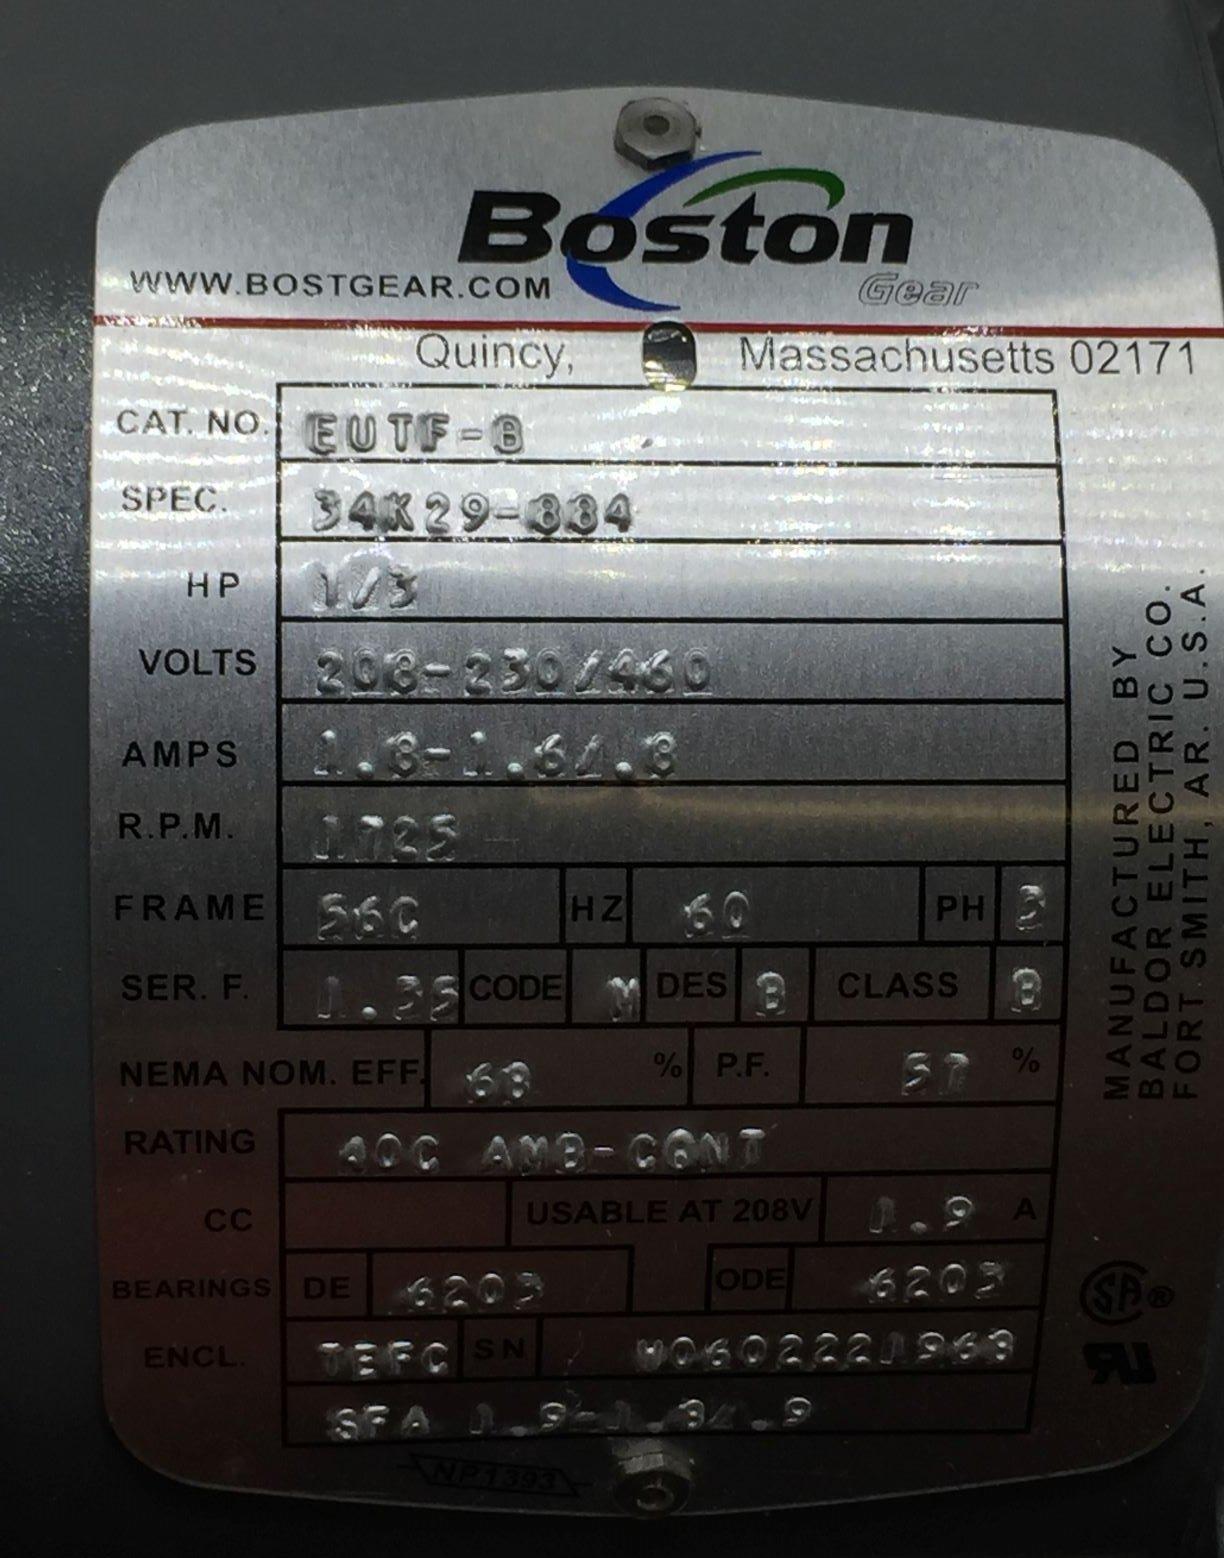 NEW BOSTON GEAR EUTF-B AC MOTOR 1/3HP 208-230/460V FRAME 56C 